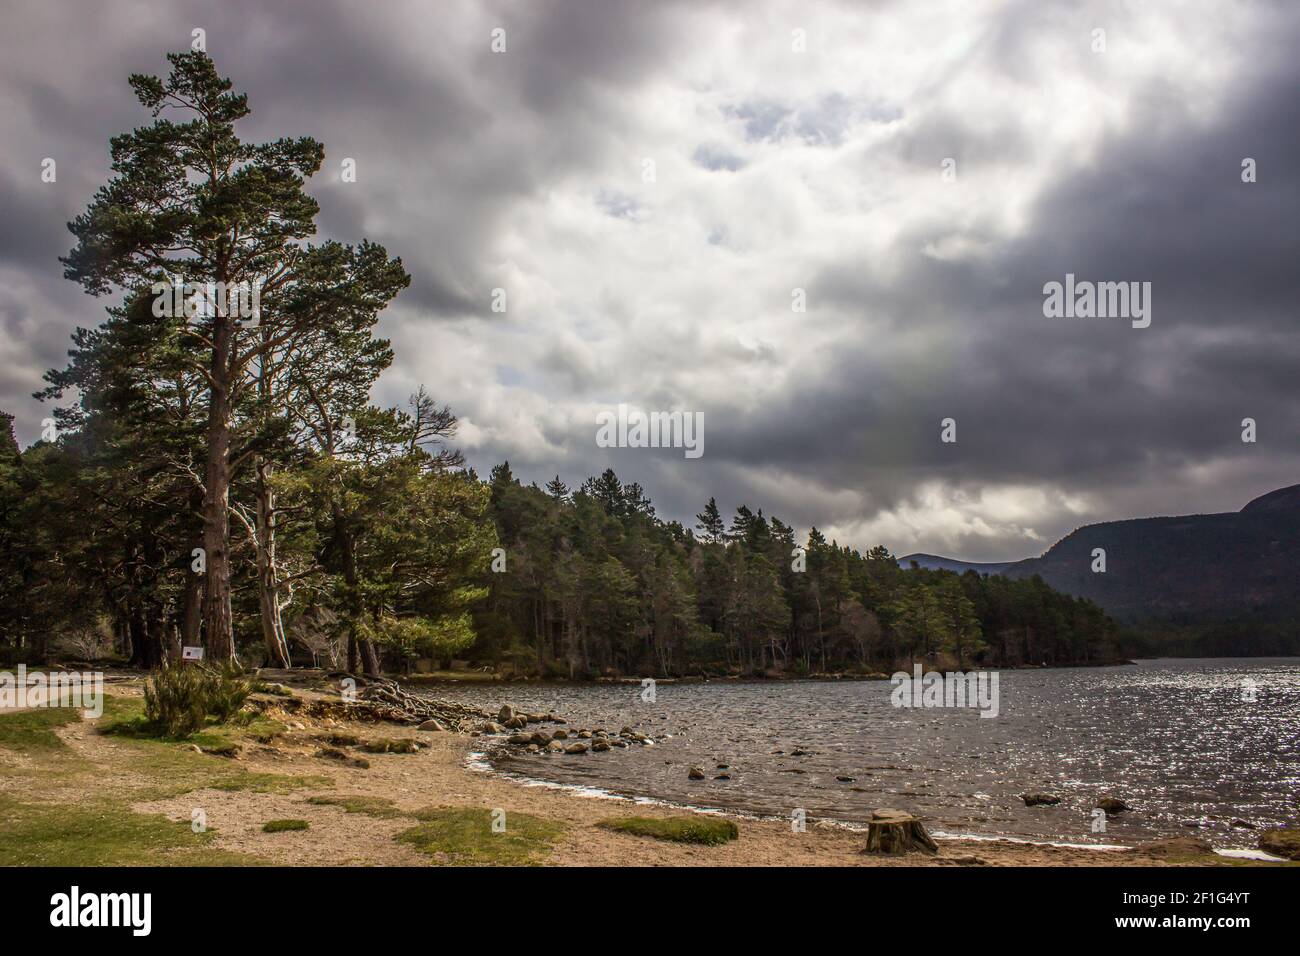 Pins sur la rive du Loch an Eilein dans la forêt de Rothiemurchus dans le parc national de Cairngorms, en Écosse, avec un ciel orageux et inquiétant Banque D'Images